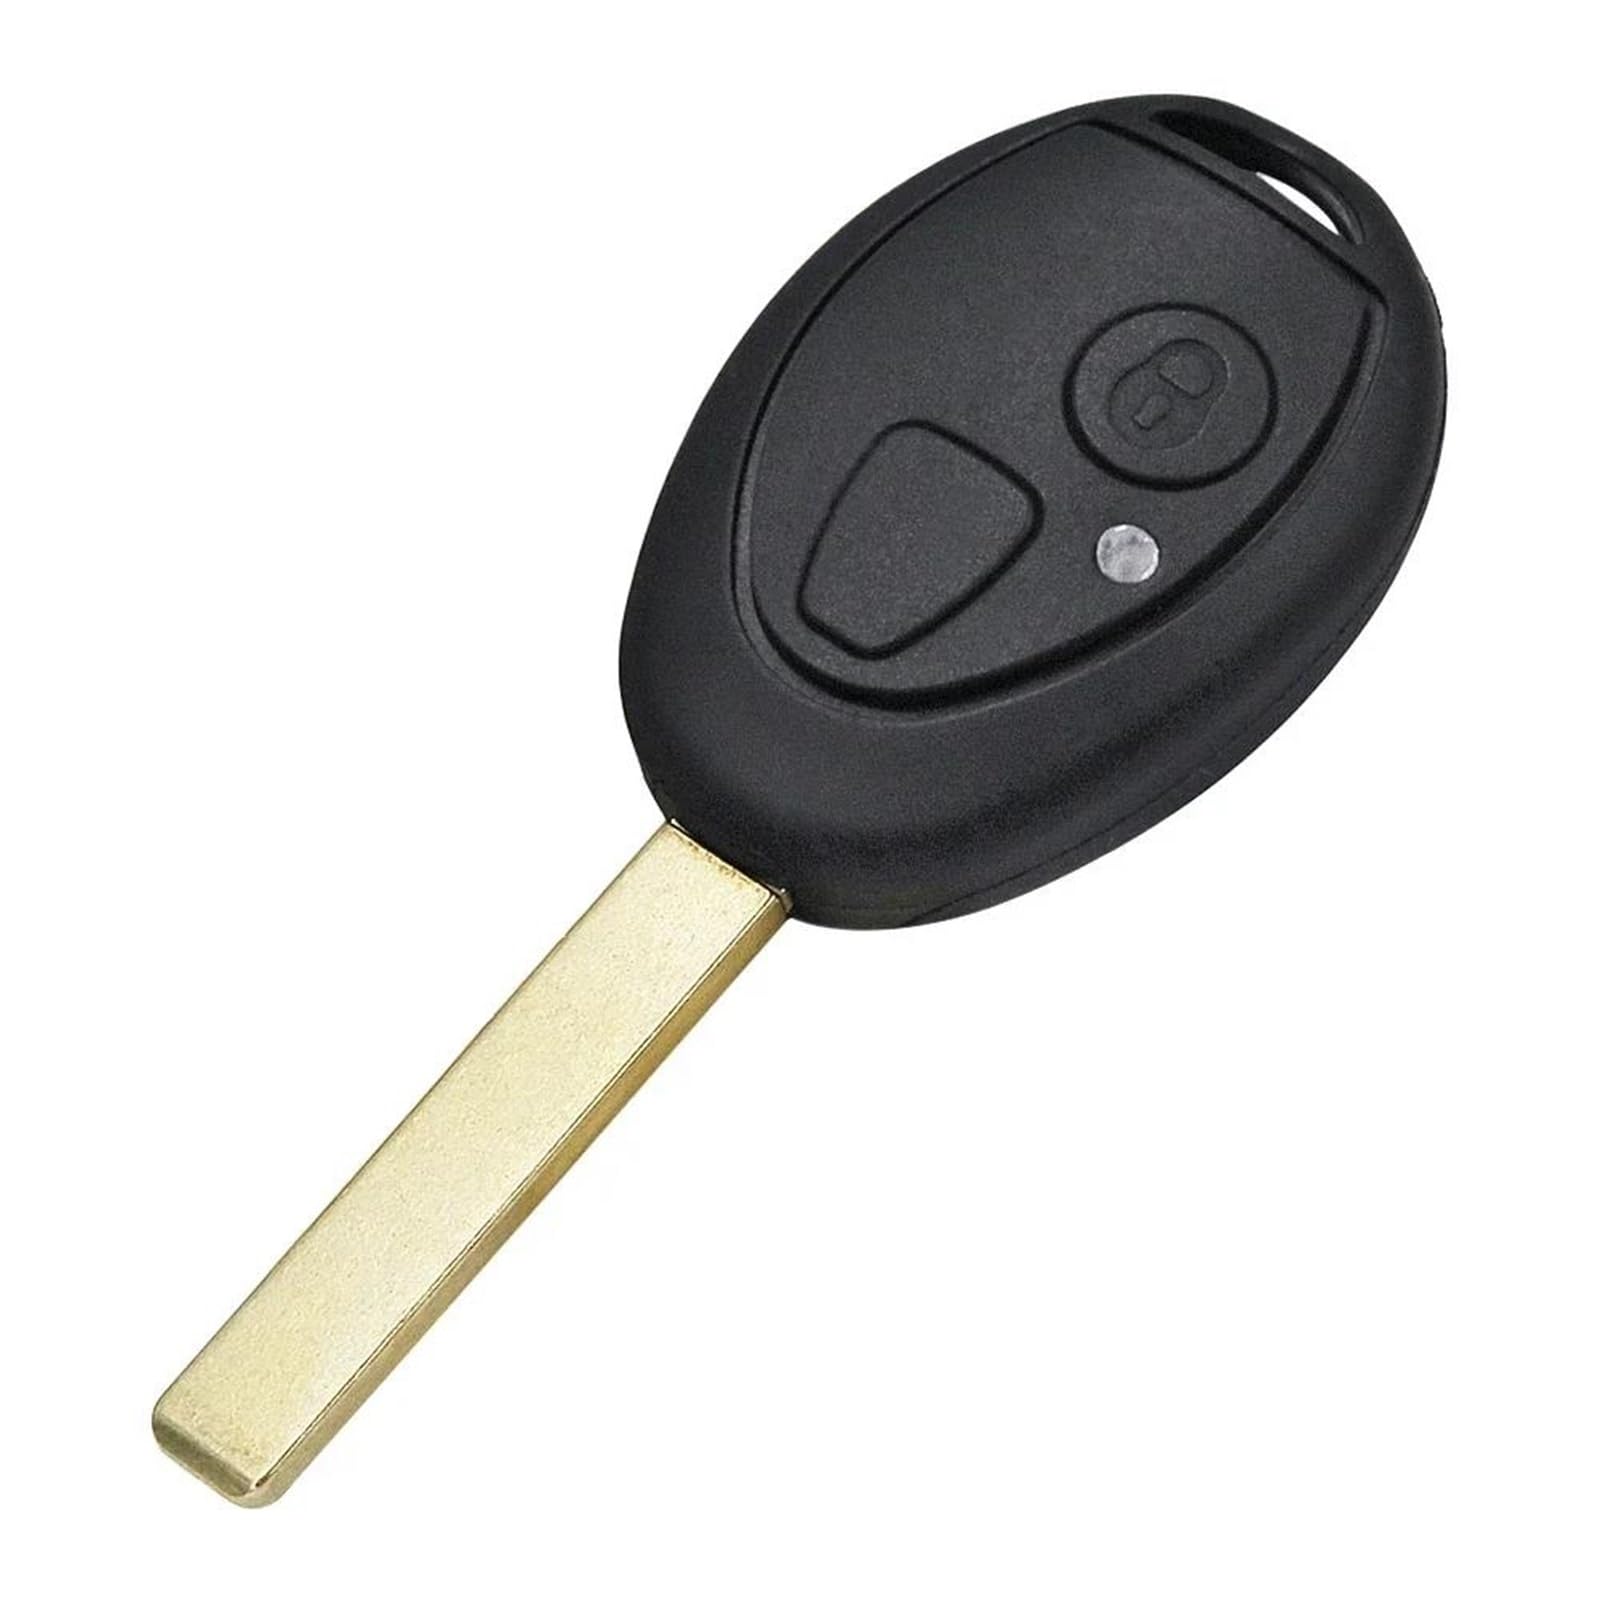 Auto Schlüsselgehäuse Für 75 Z3 Z4 Für X3 Für X5 E46 E39 E36 E34 Für MG 2 Taste Fernbedienung Auto Schlüssel Shell Fall Auto Autoschlüssel von SXXJVES